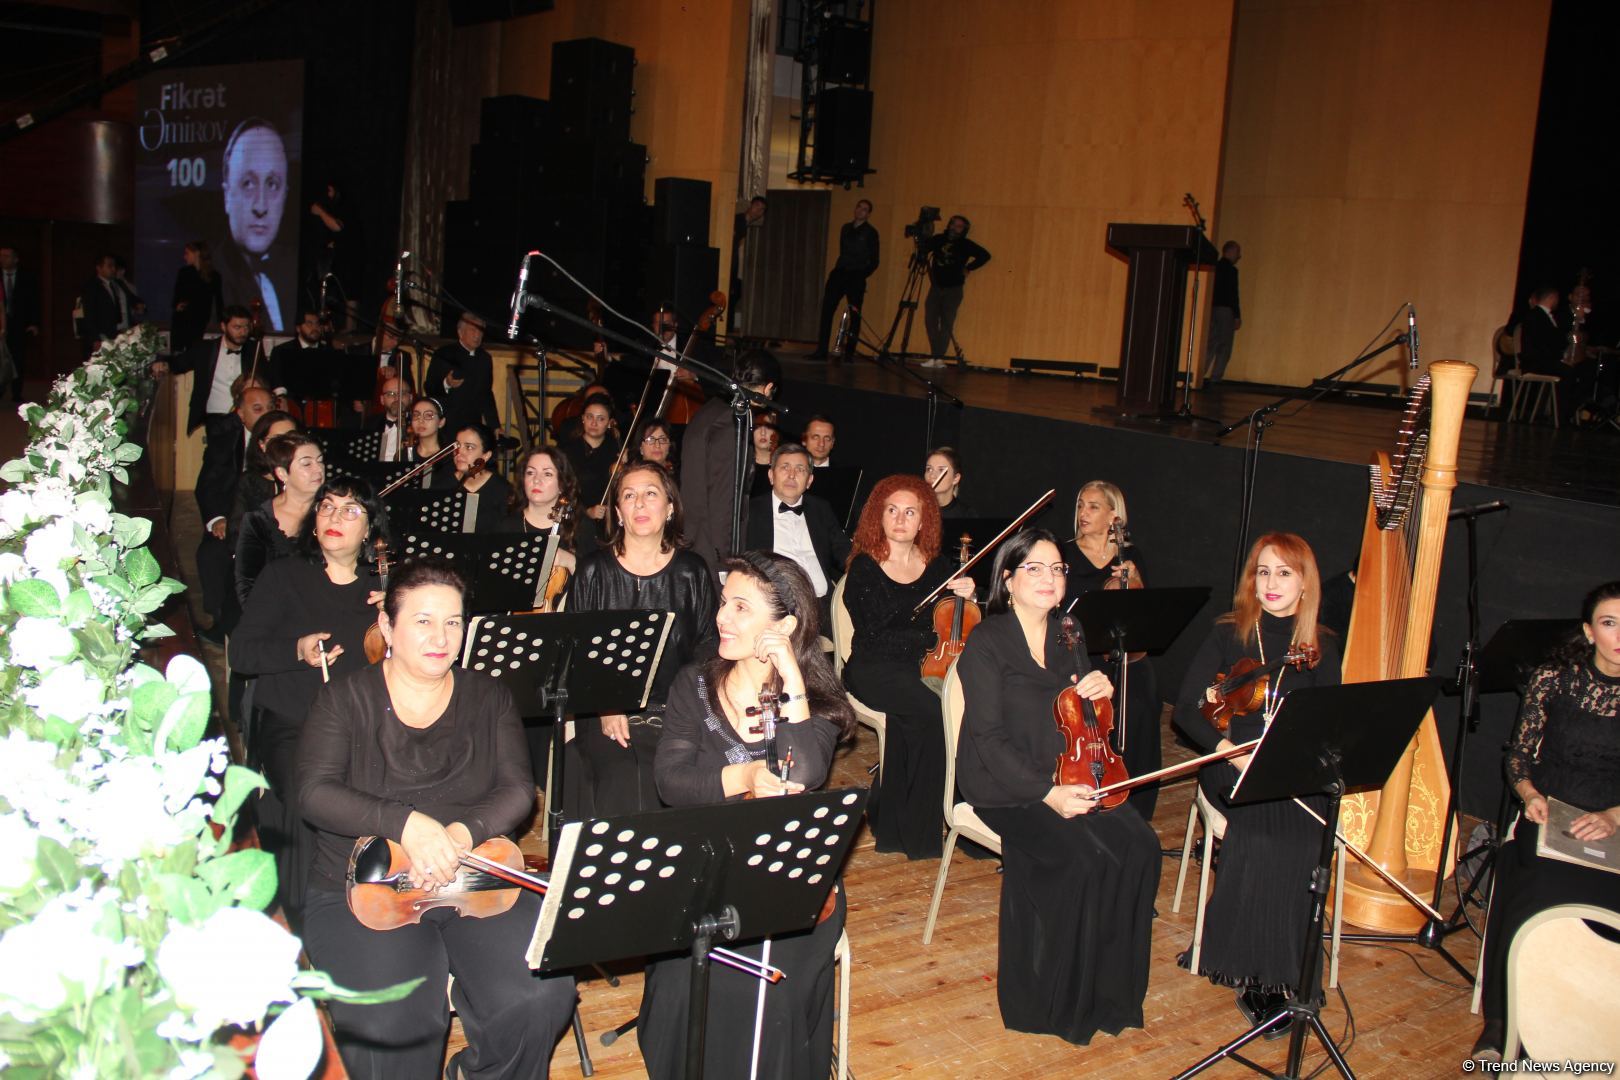 Во Дворце Гейдара Алиева прошел торжественный концерт, посвященный 100-летию Фикрета Амирова  (ФОТО/ВИДЕО)